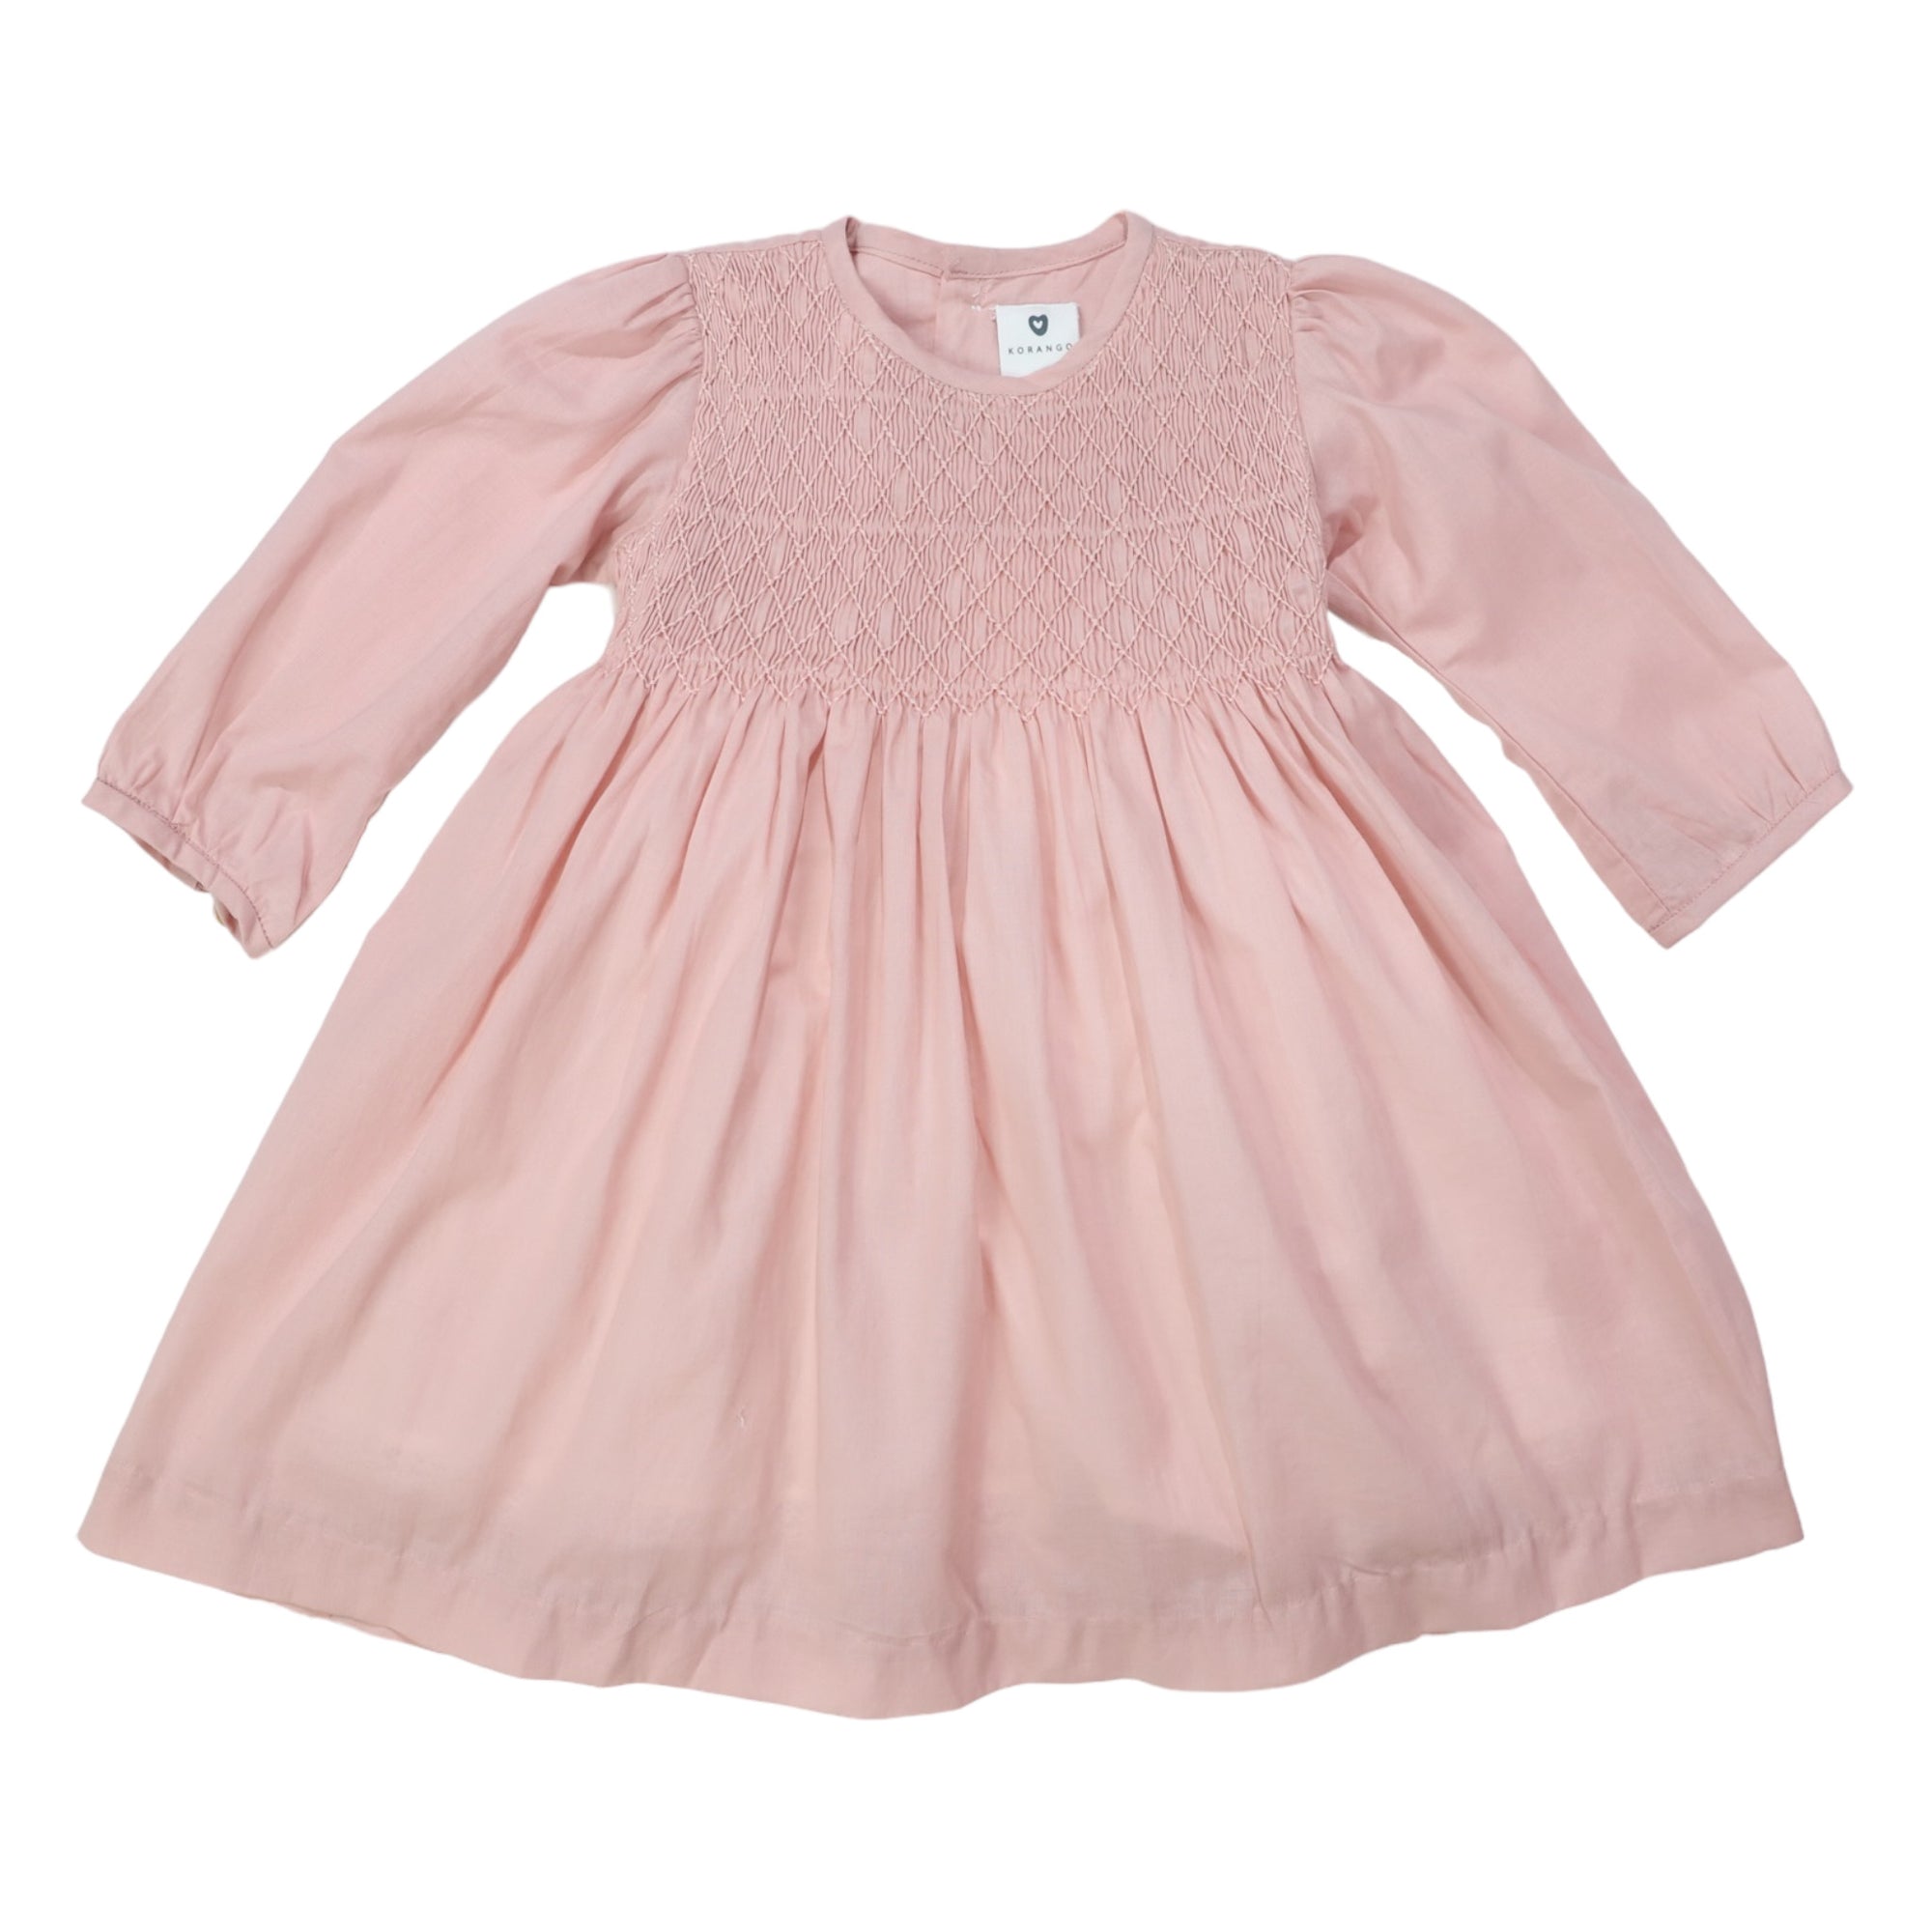 Korango Subtle Smocked Dress - Dusty Pink